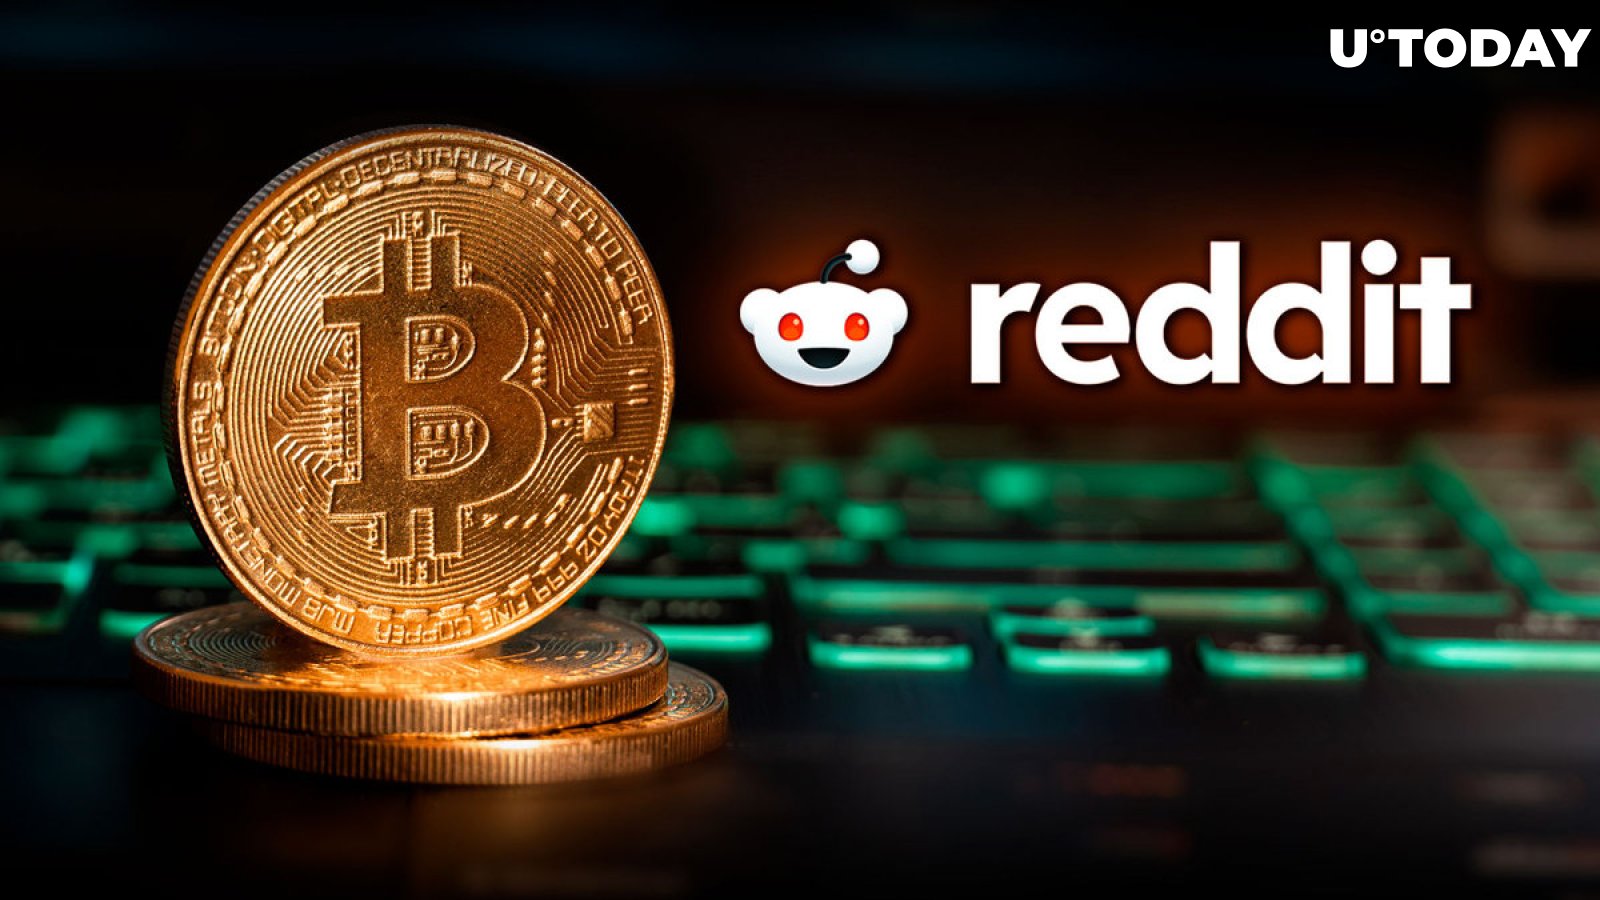 ນີ້ Viral Bitcoin Post ໃນ Reddit ອາດຈະເຮັດໃຫ້ເກີດຄວາມຫຼົງໄຫຼທີ່ຮ້າຍແຮງບາງຢ່າງ